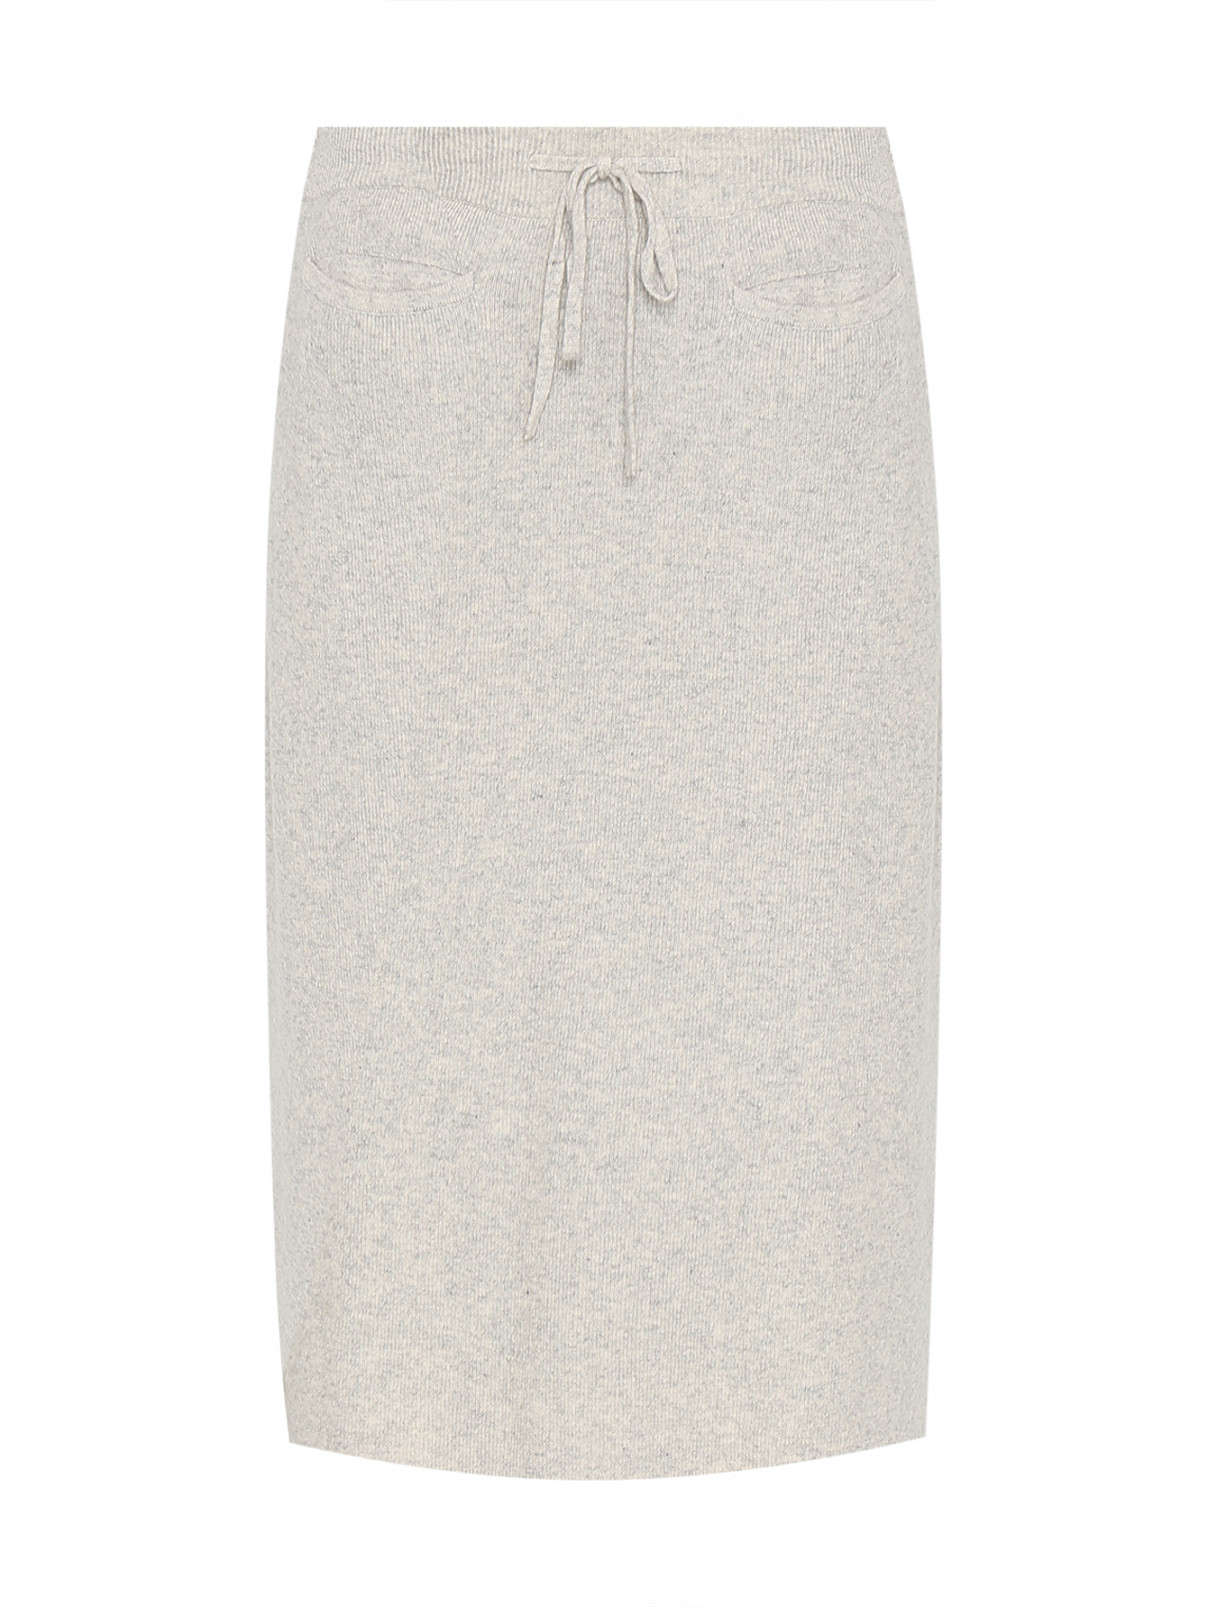 Трикотажная юбка с разрезами и карманами Max&Moi  –  Общий вид  – Цвет:  Серый